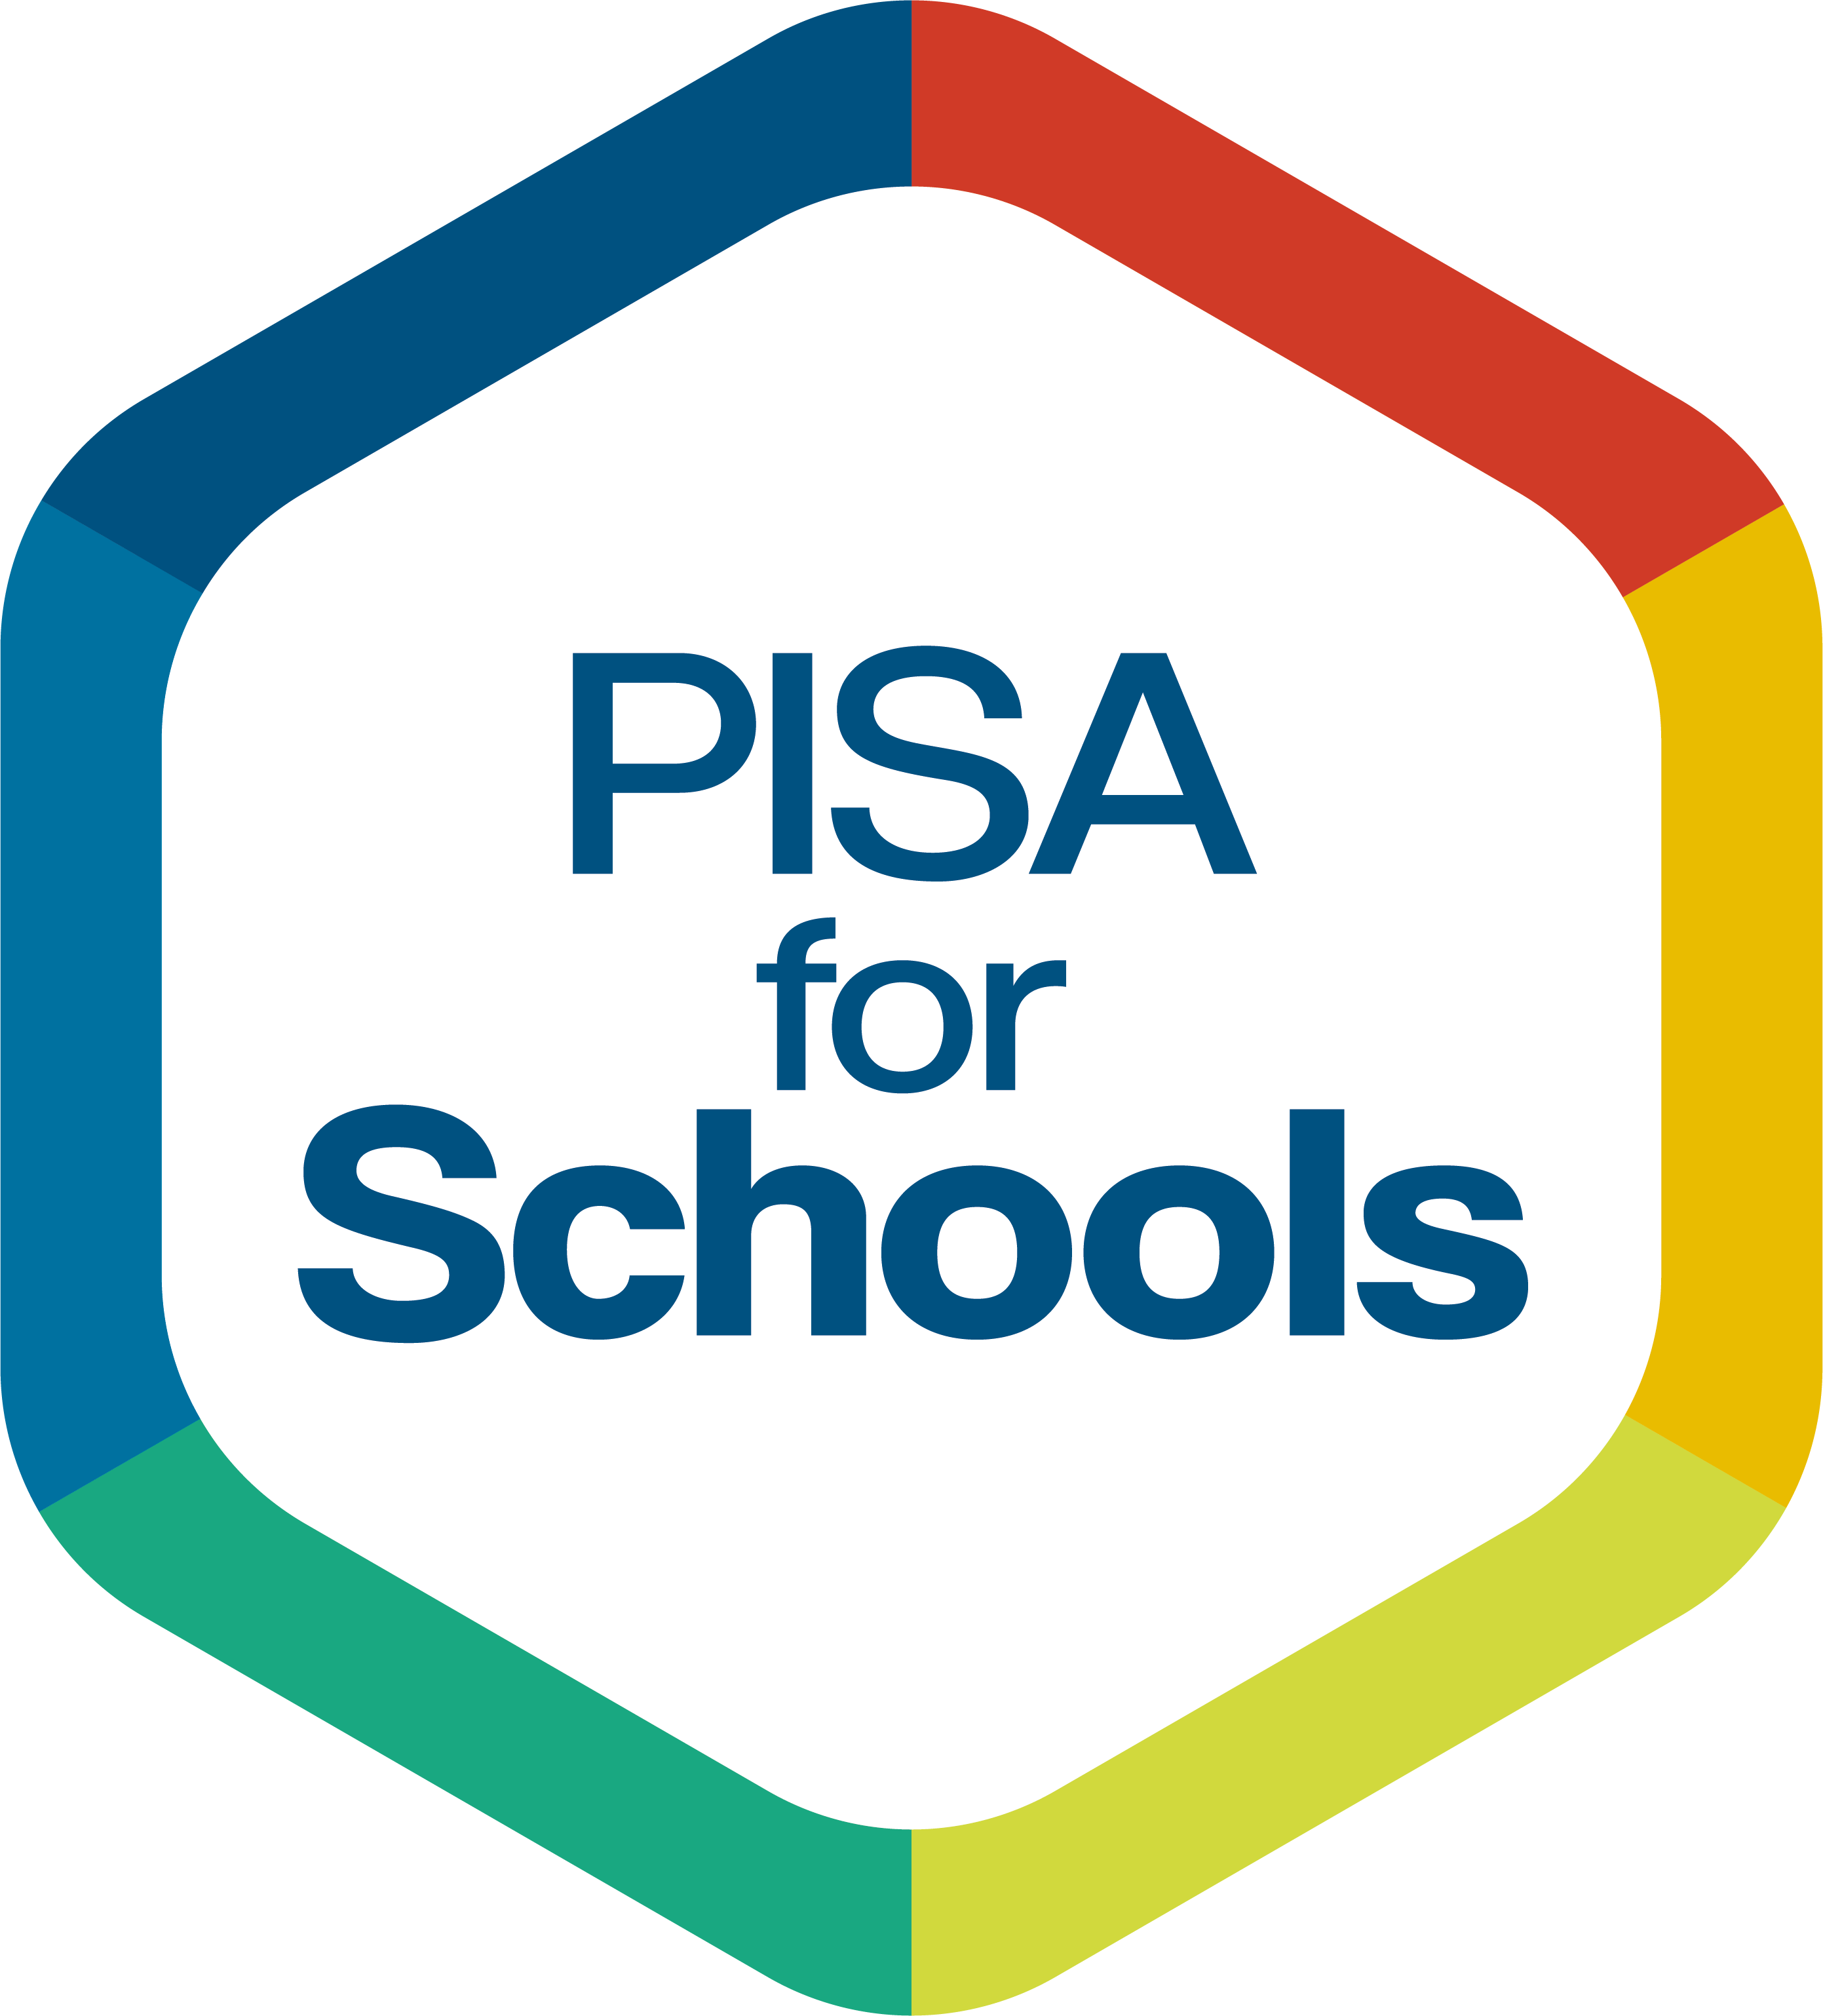 PISA for Schools